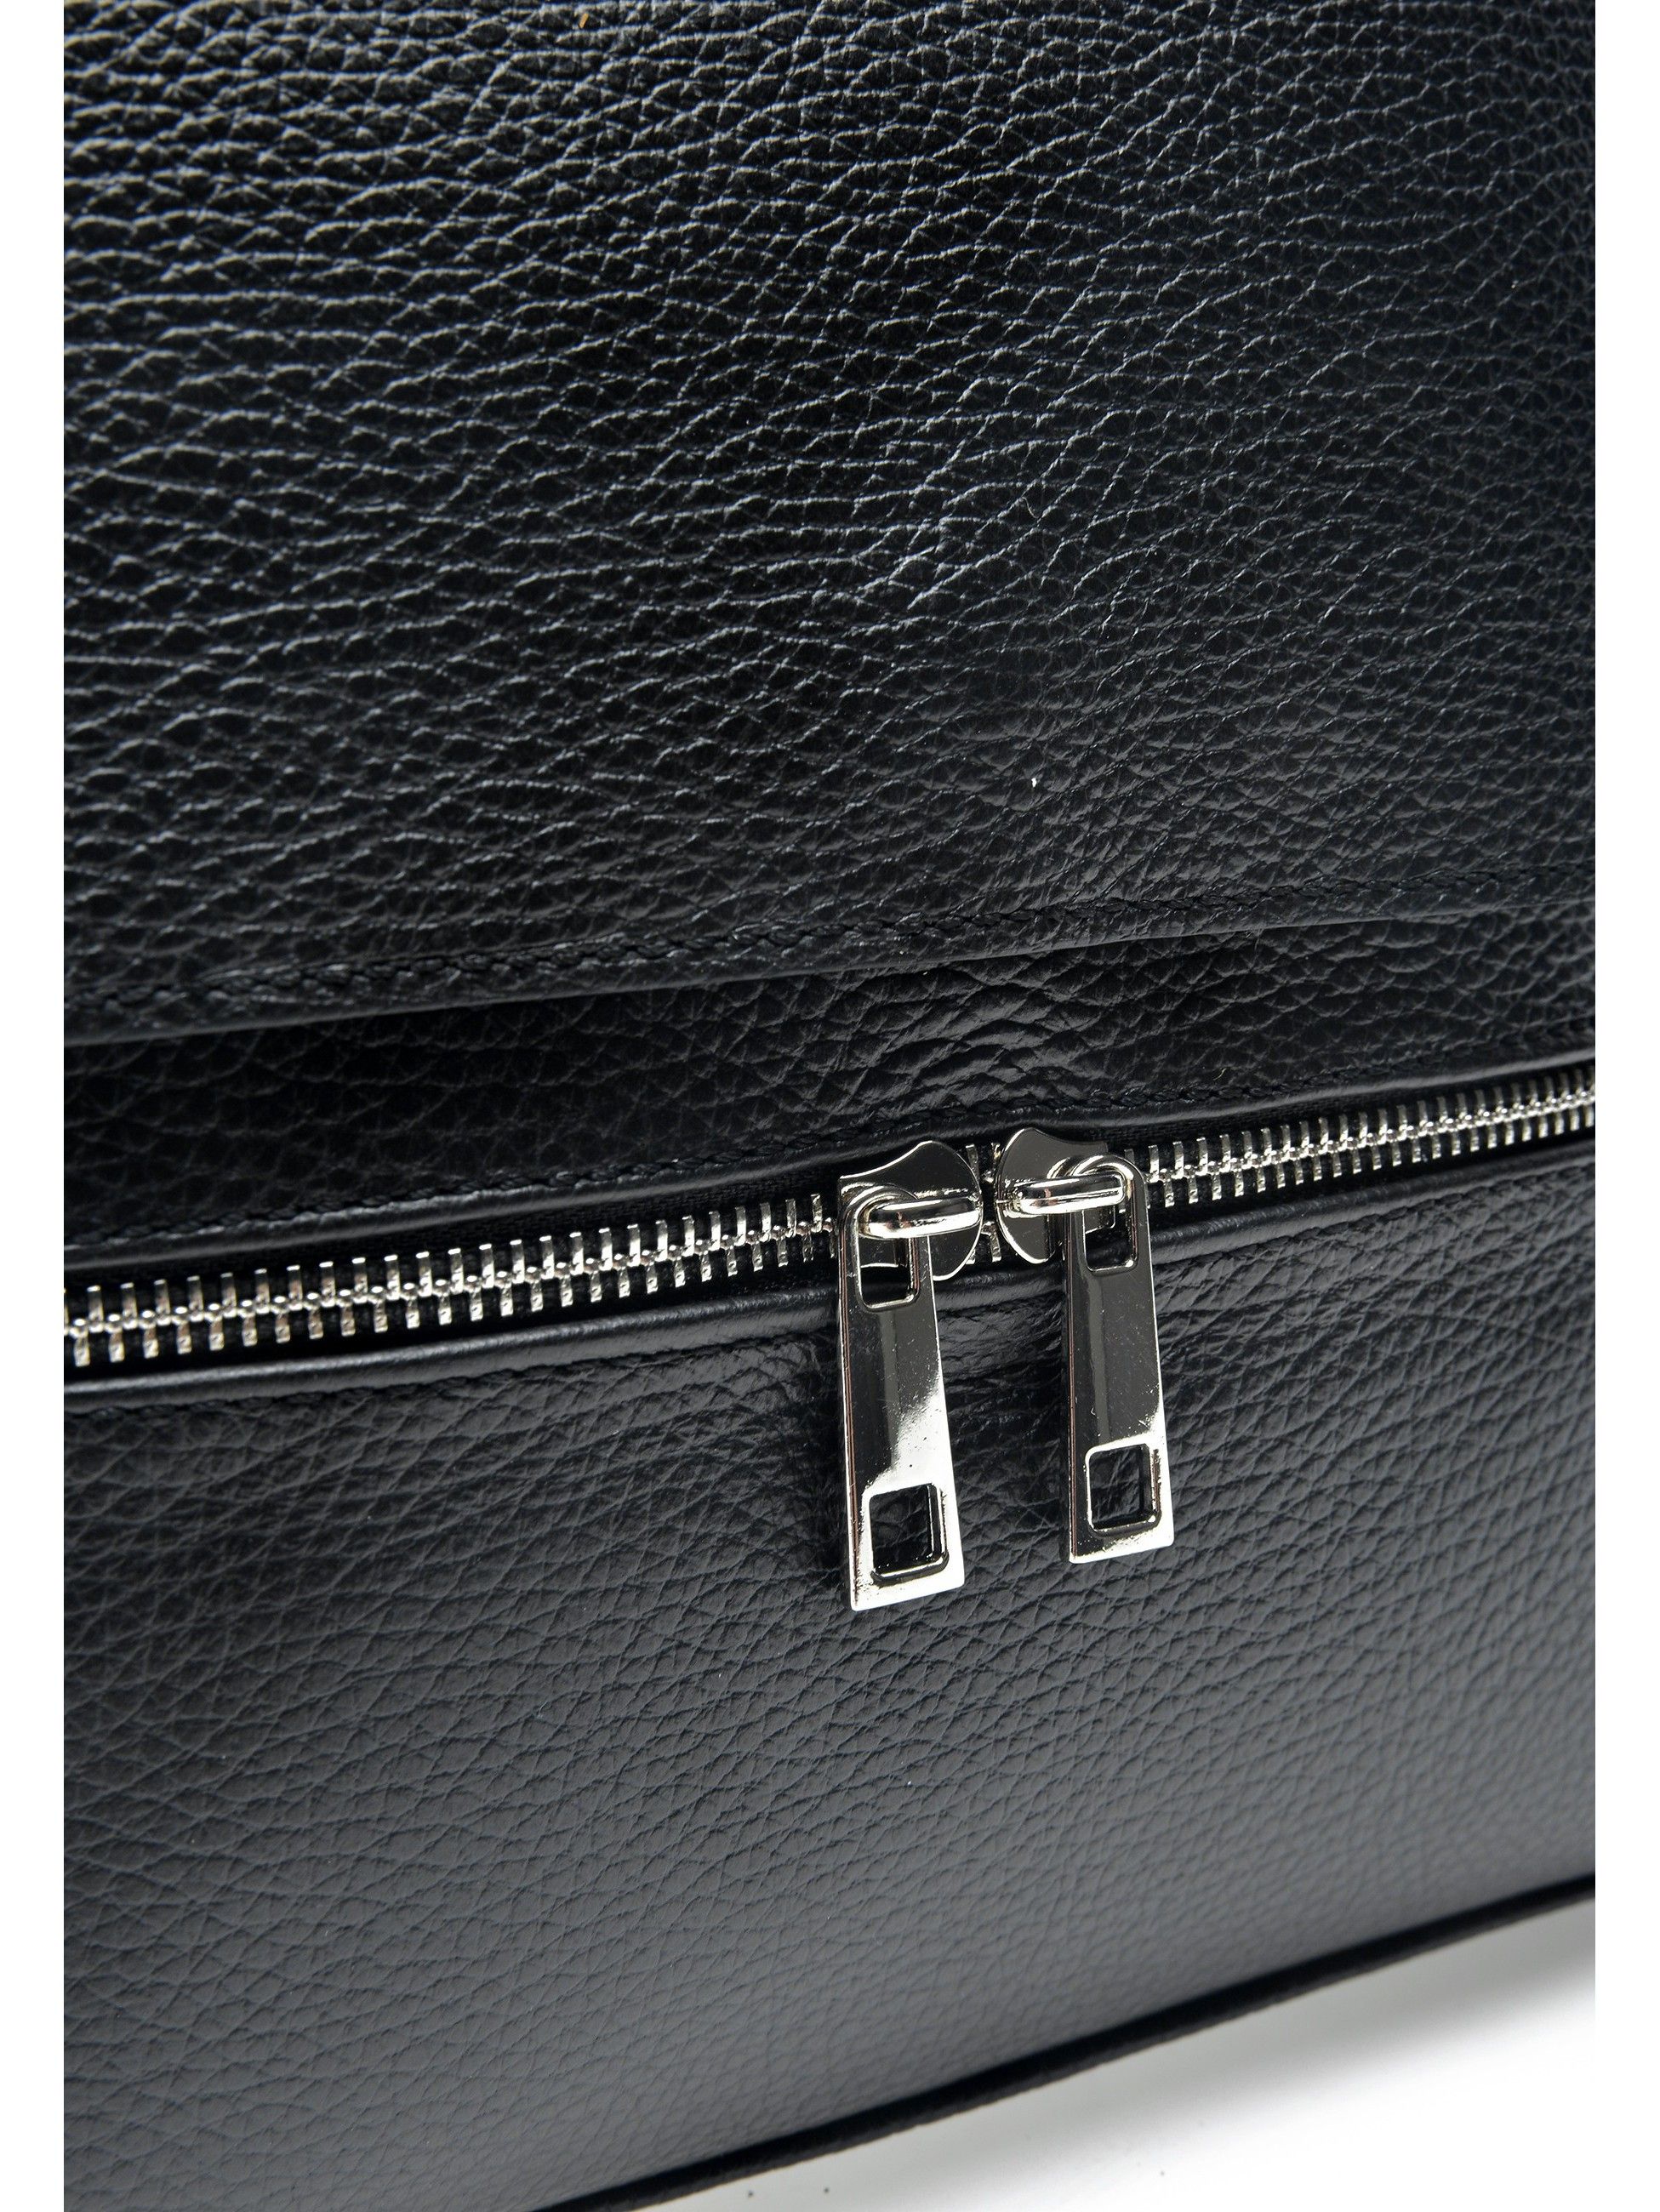 Shoulder Bag
100% cow leather
Flap over magnetic closure
Zipped bag
Inner zip pocket
Front zip pocket
Dimensions (L): 27x26x7 cm
Handle: /
Shoulder strap:120 cm (adjustable)